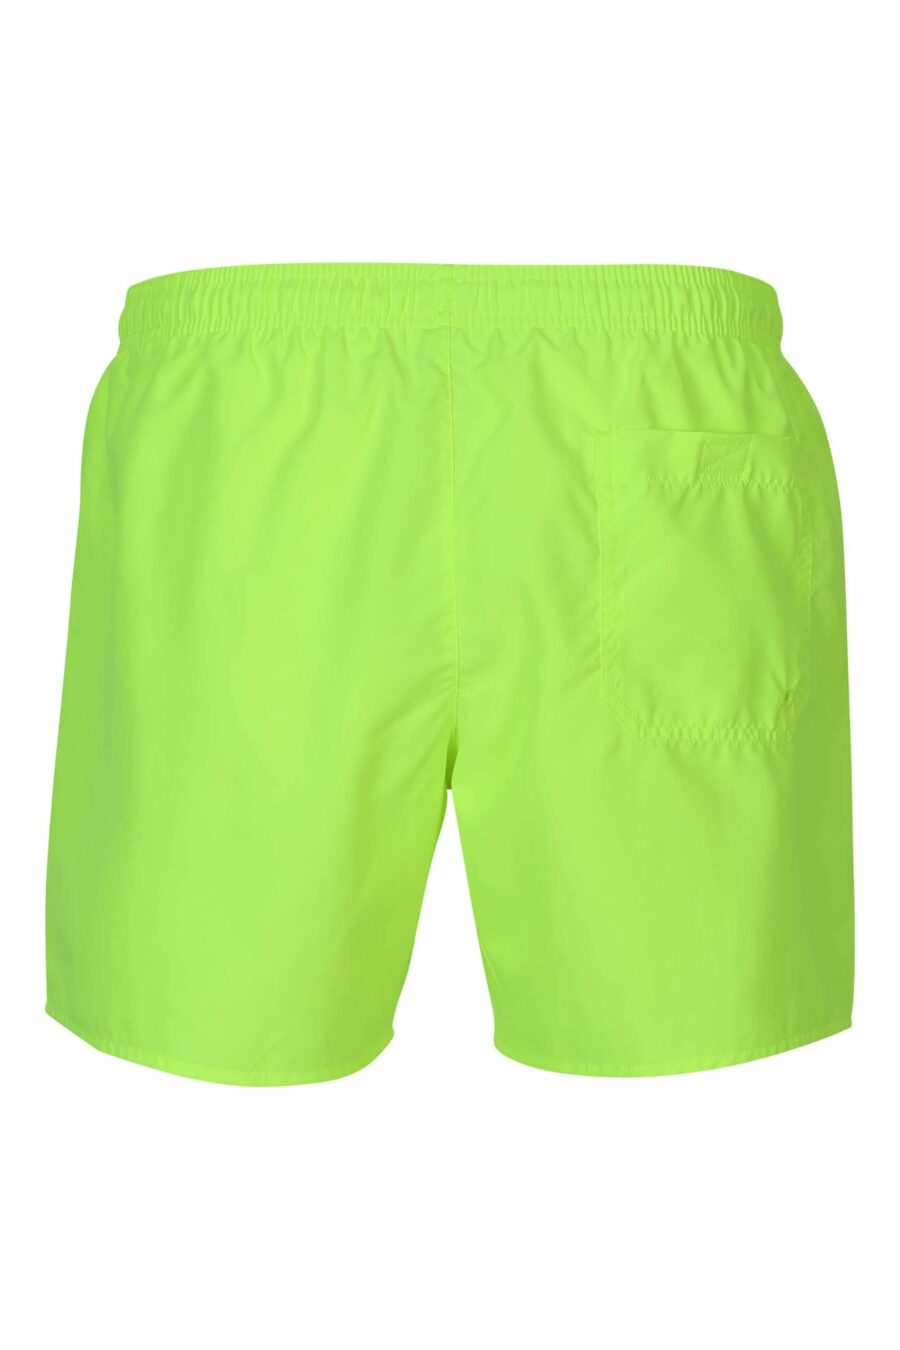 Neongrüner Badeanzug mit vertikalem seitlichem "lux identity" Logo - 8059972905280 2 skaliert